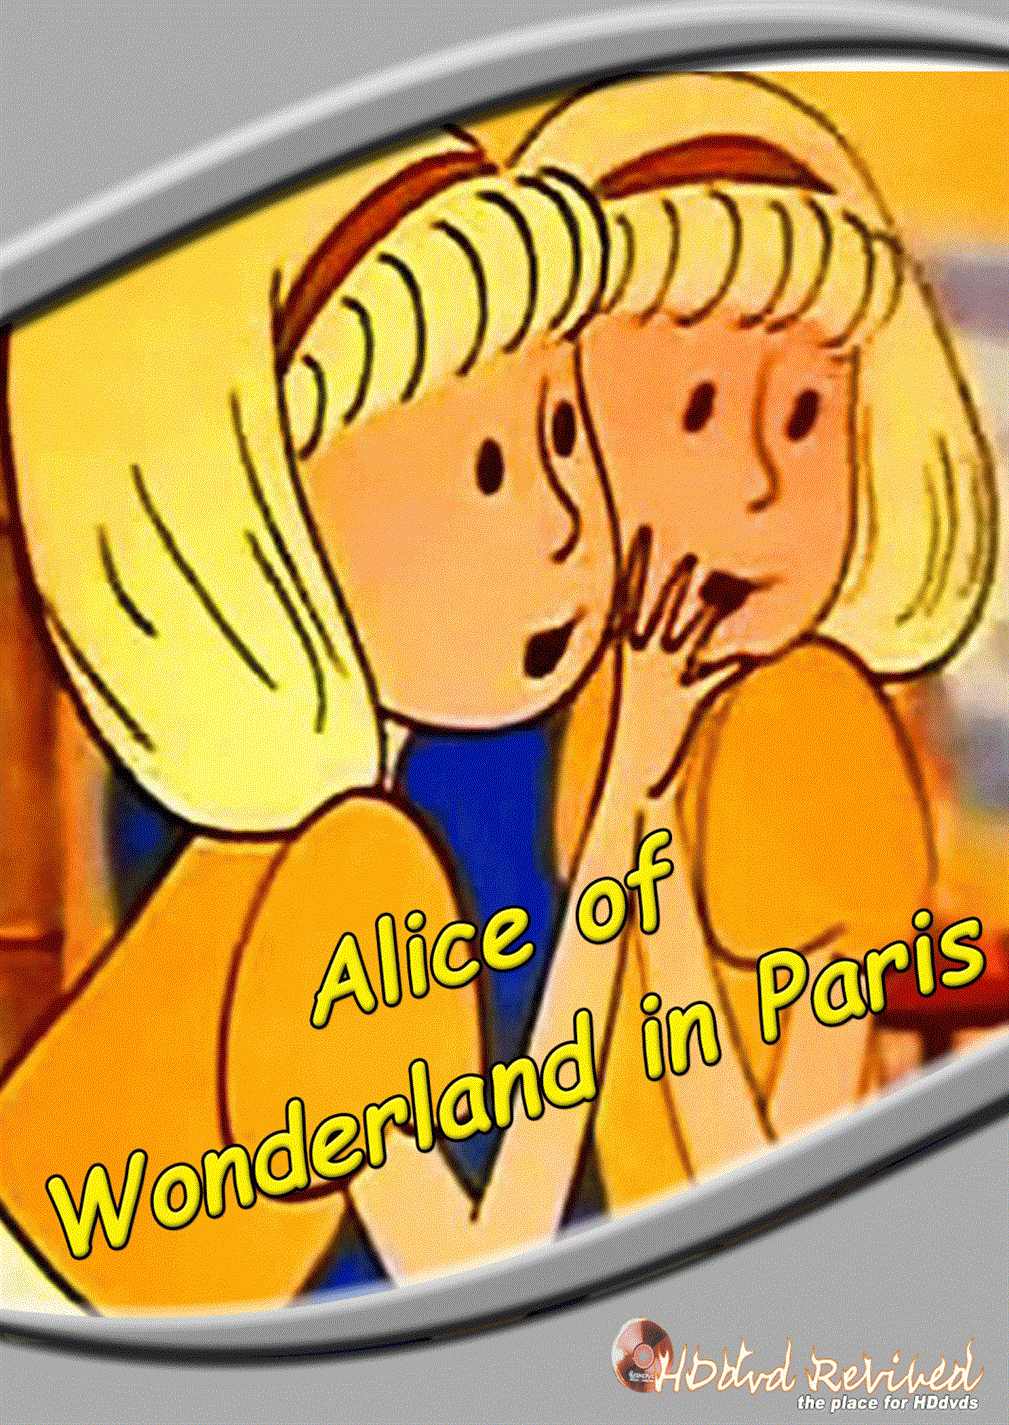 Alice of Wonderland in Paris (1966) Standard DVD (HDDVD-Revived) UK Seller